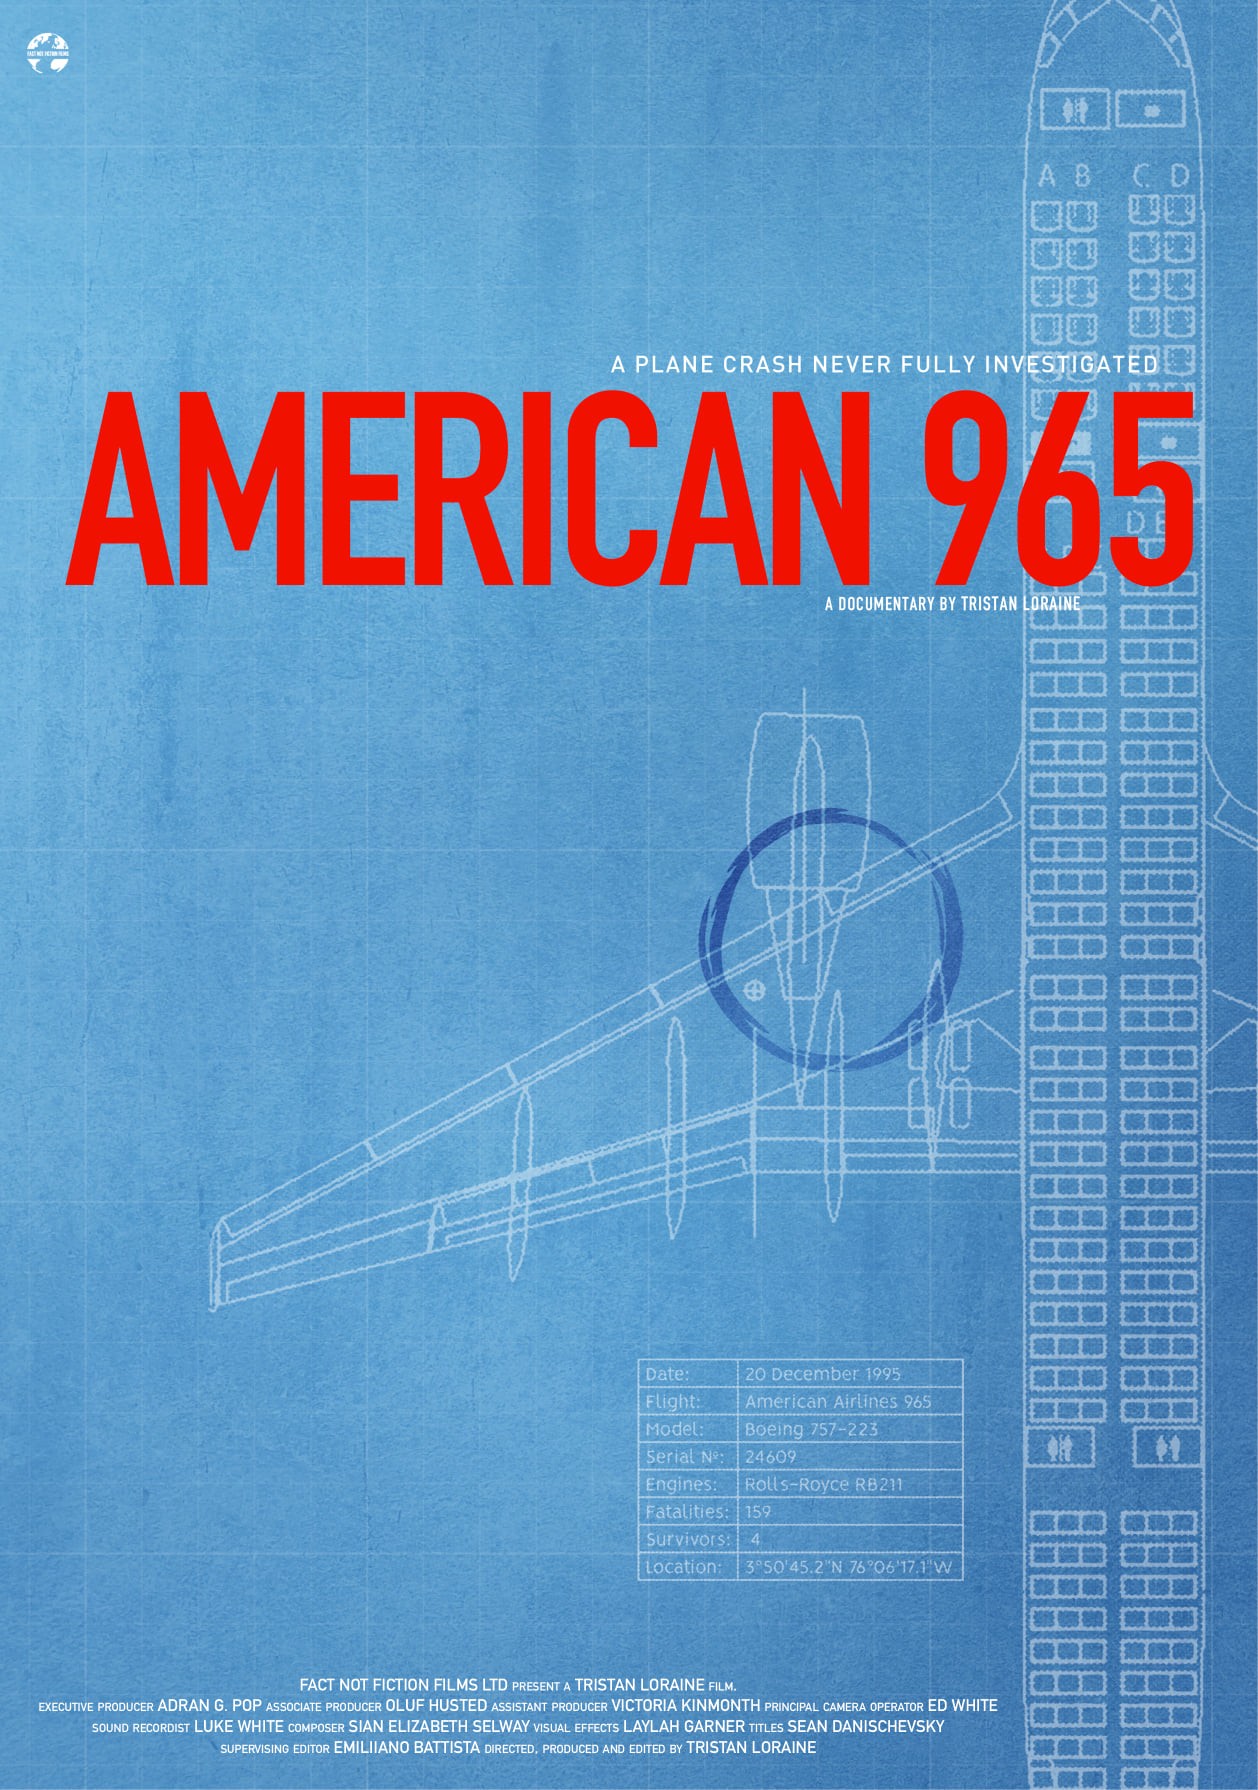 American 965 Ending Explained [SPOILER!]